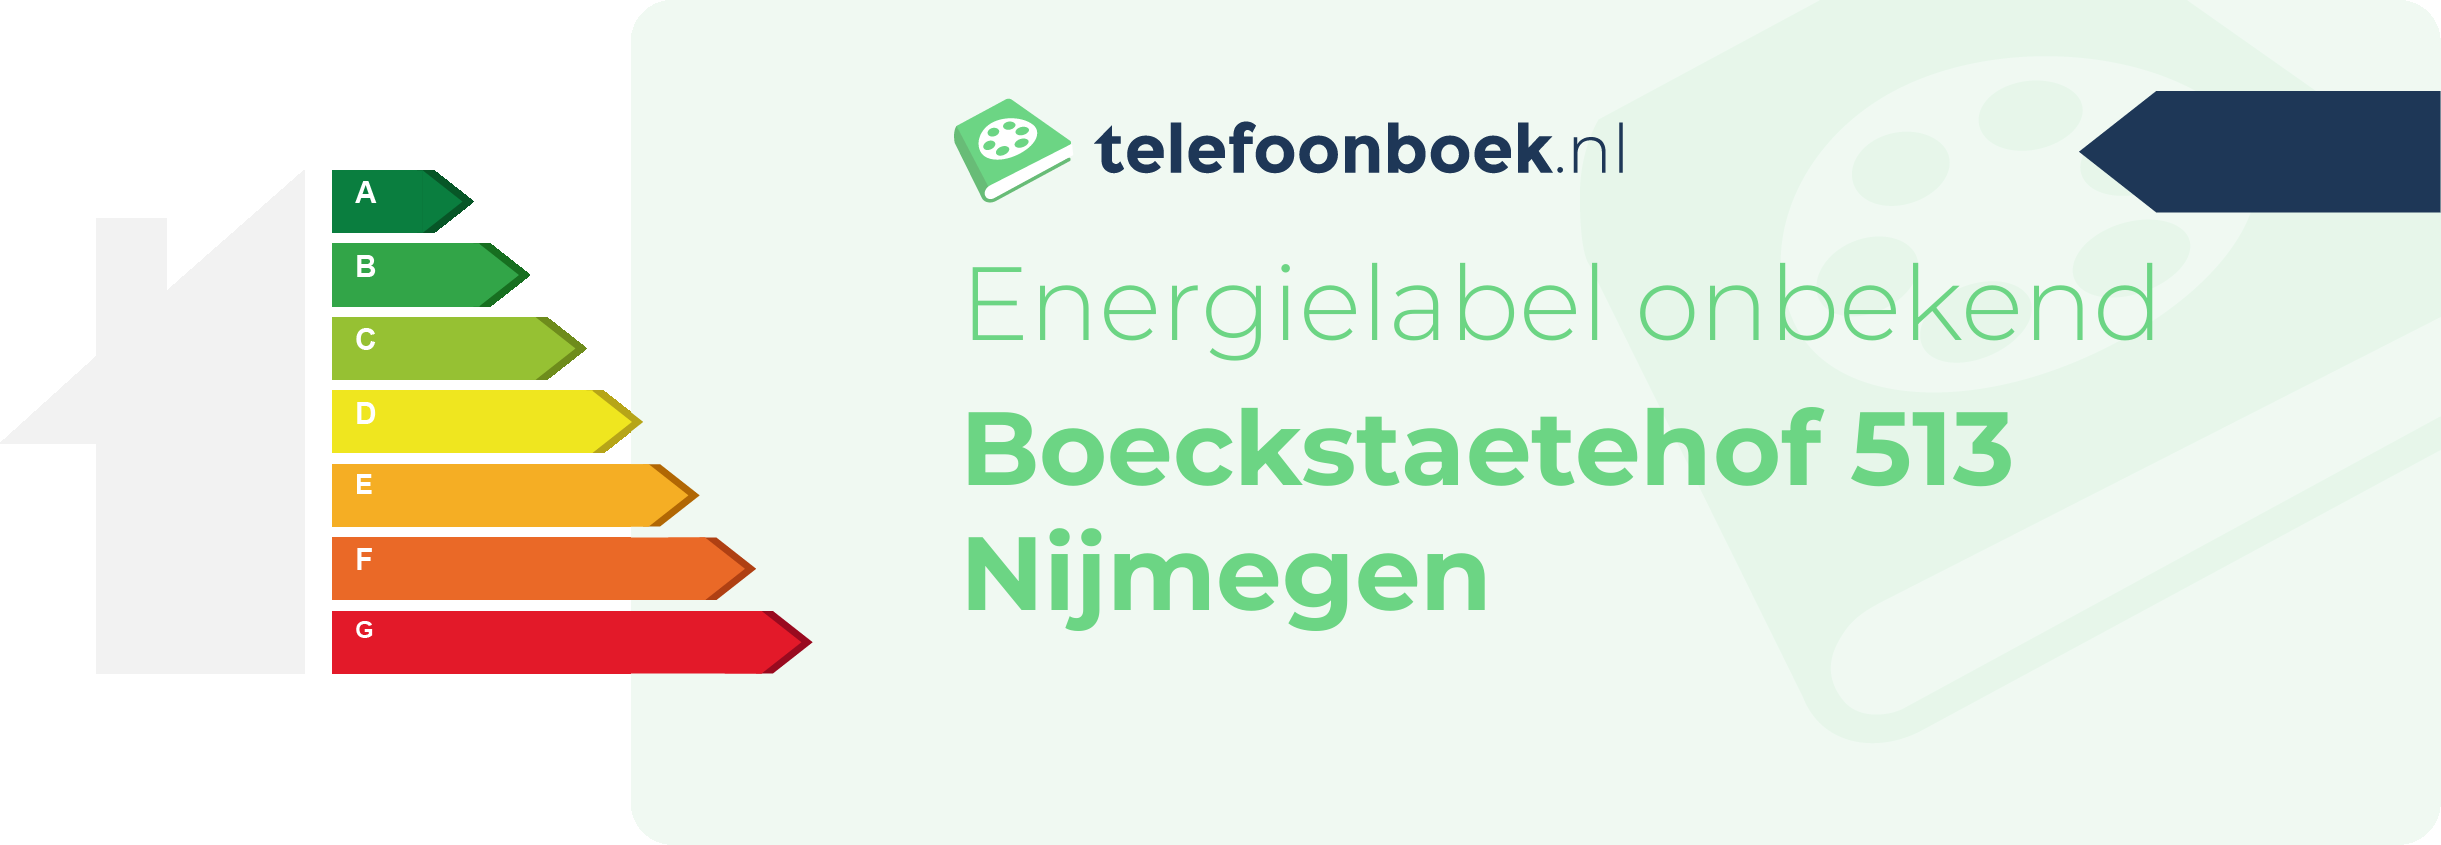 Energielabel Boeckstaetehof 513 Nijmegen